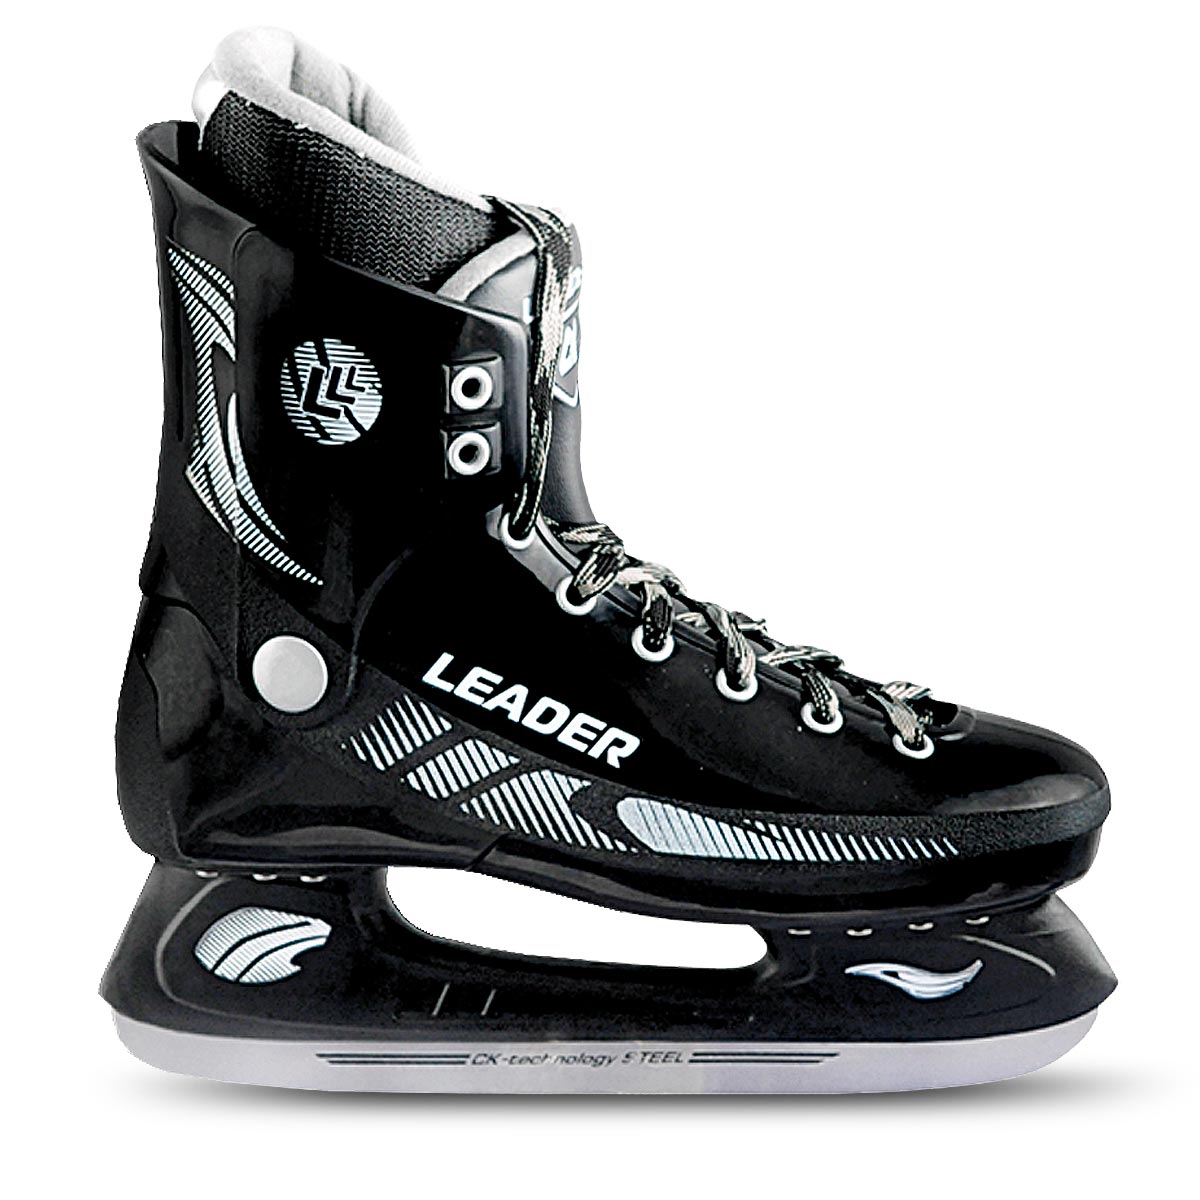 Коньки хоккейные для мальчика СК Leader, цвет: черный. Размер 34